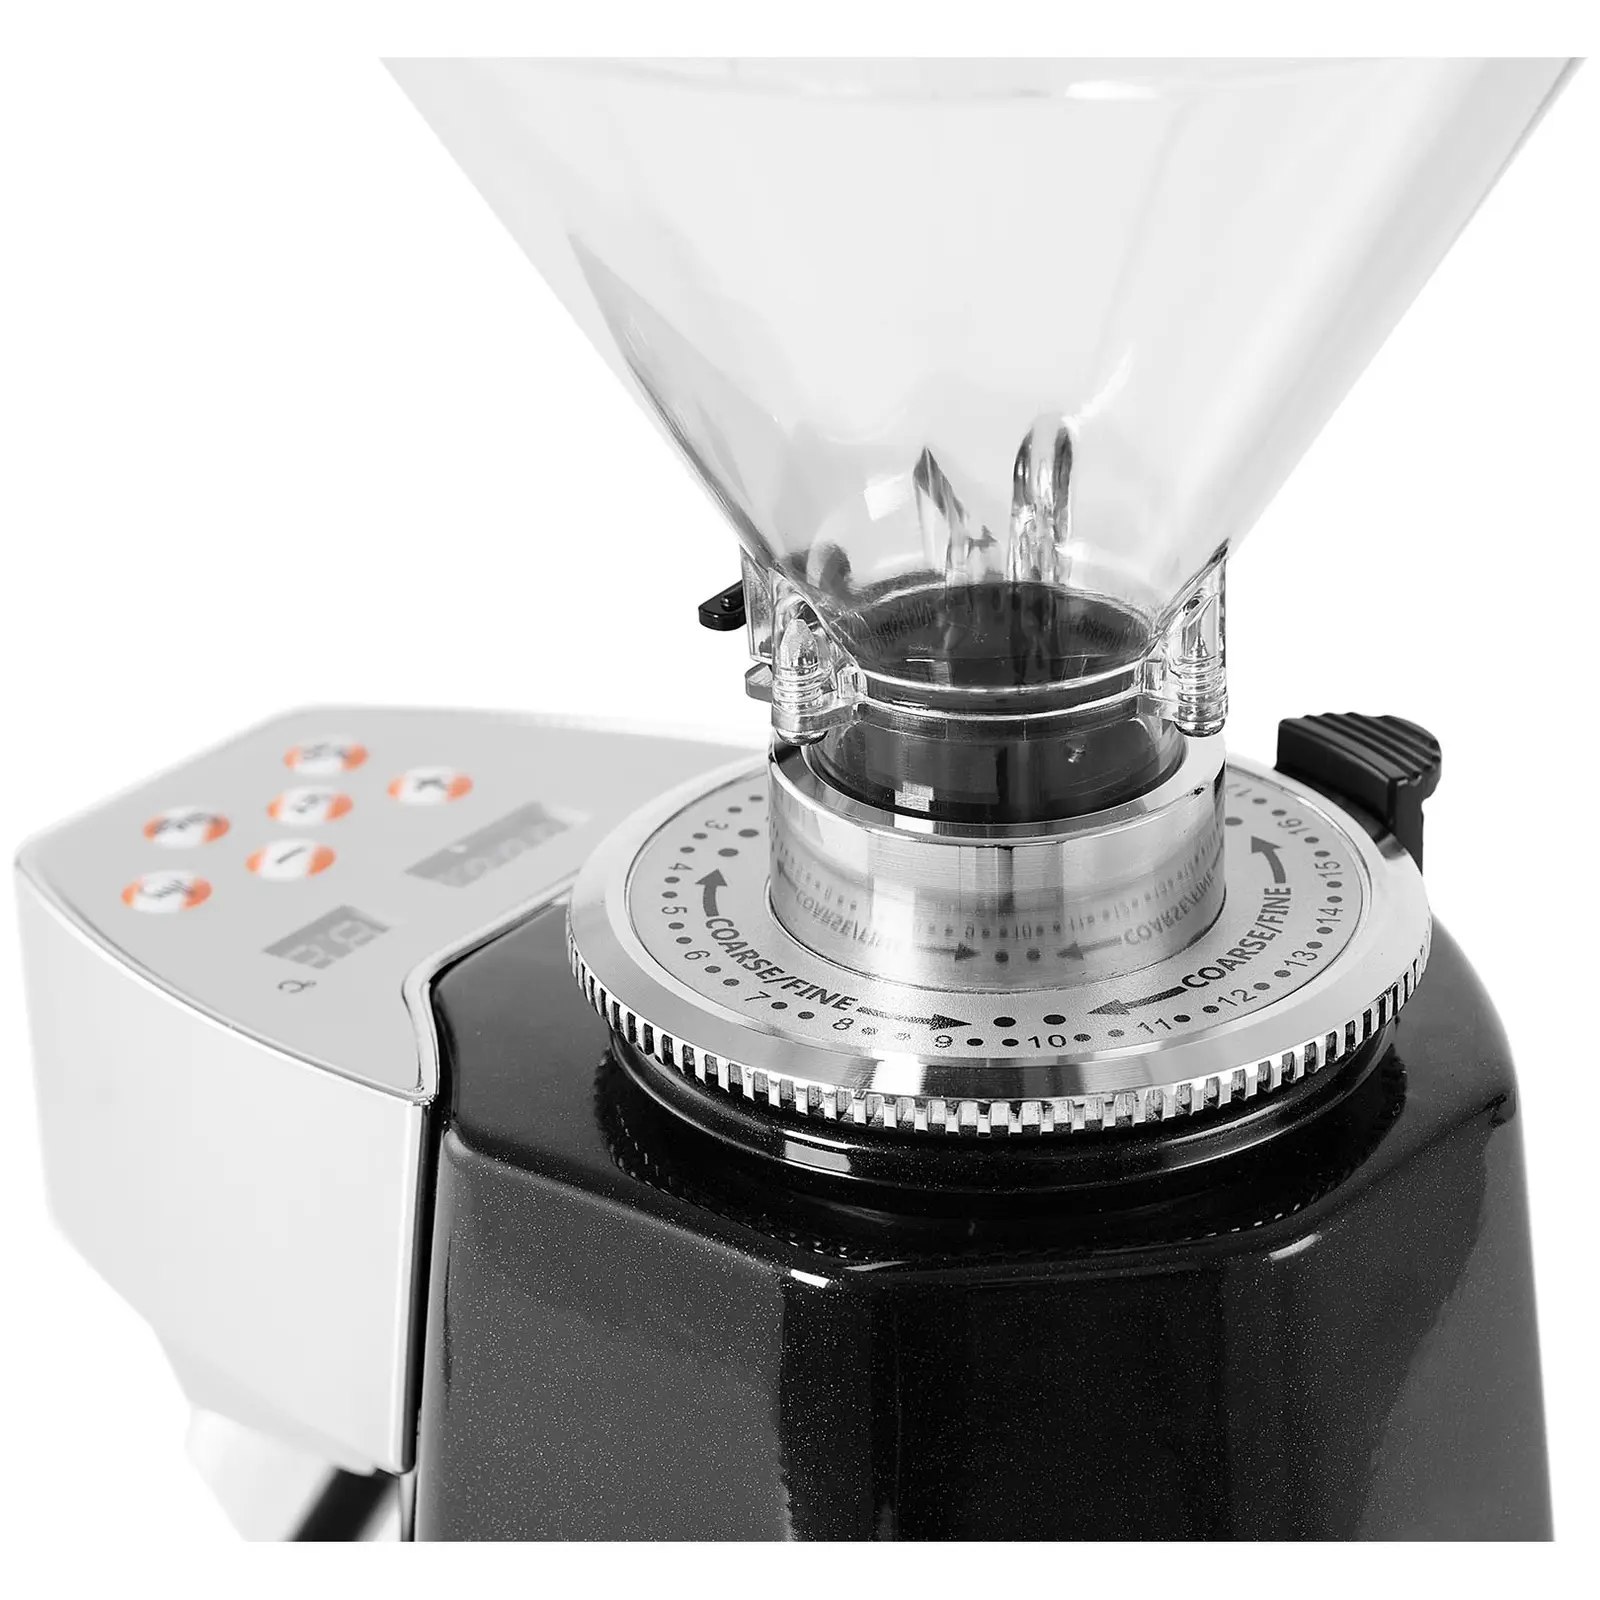 Moulin à café électrique - 200 W - 1000 ml - Noir - LED